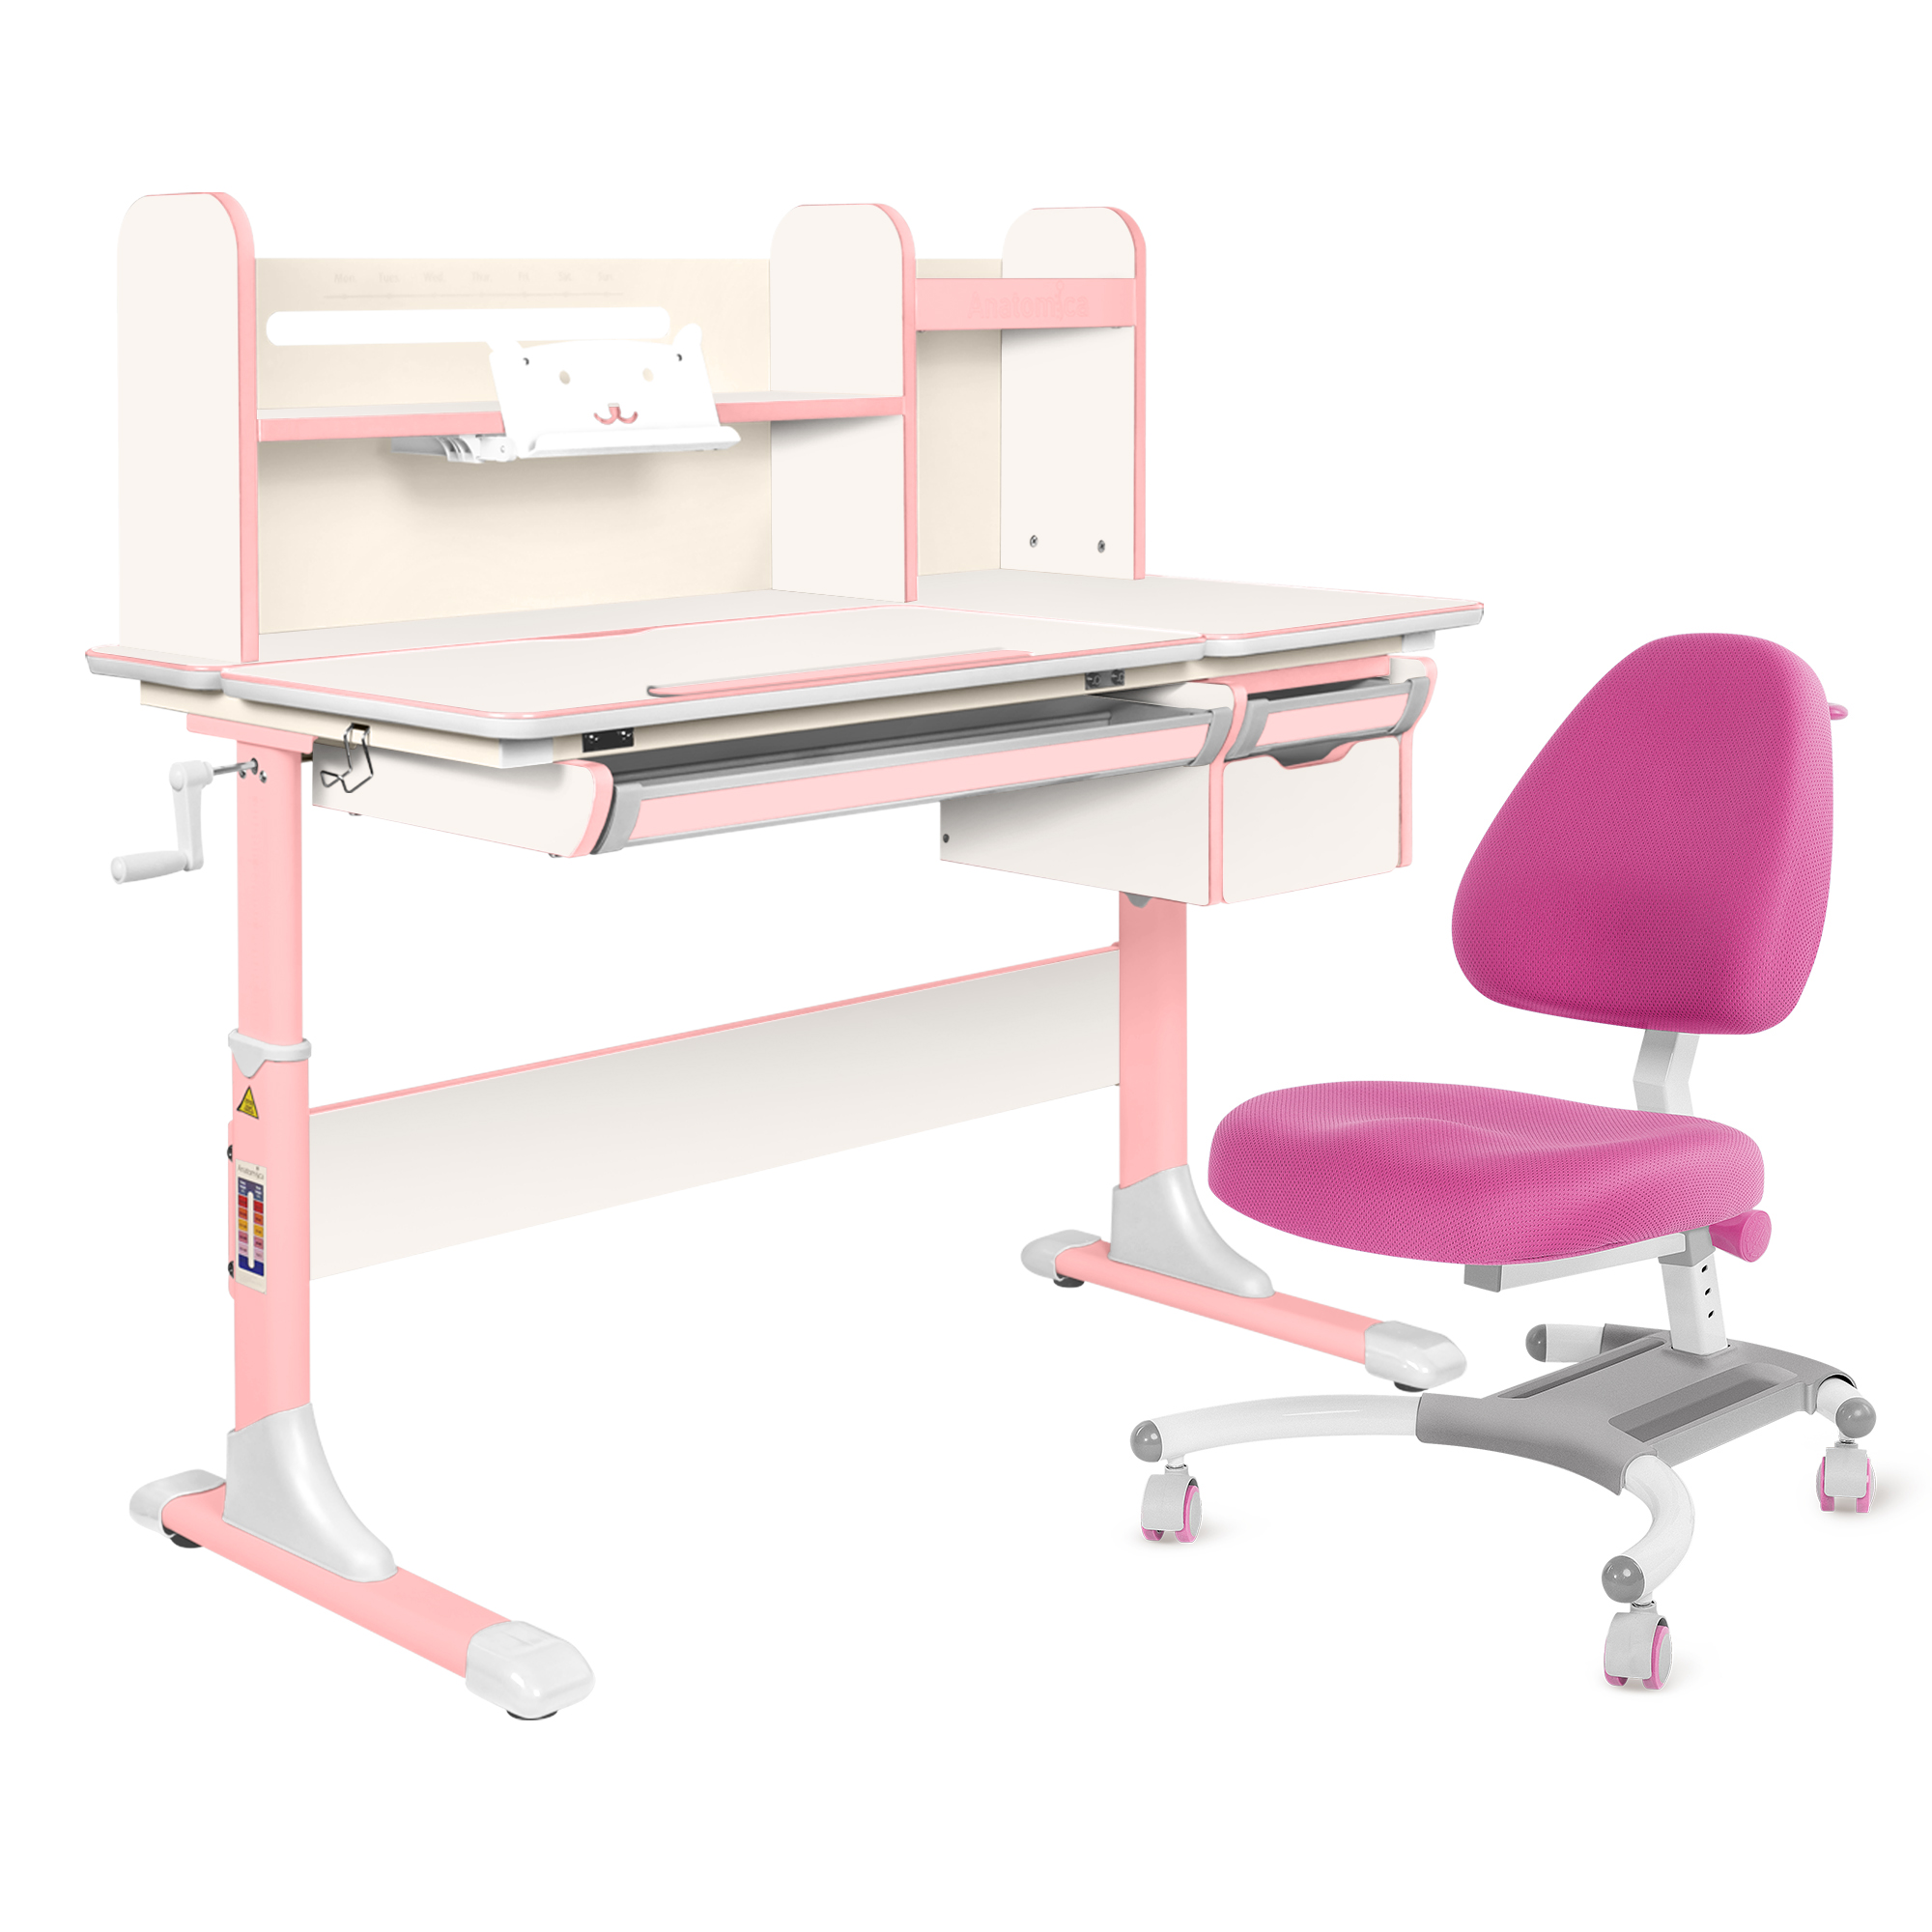 Комплект Anatomica парта Genius белый/розовый с розовым креслом Figra комплект anatomica парта genius белый розовый с розовым креслом figra